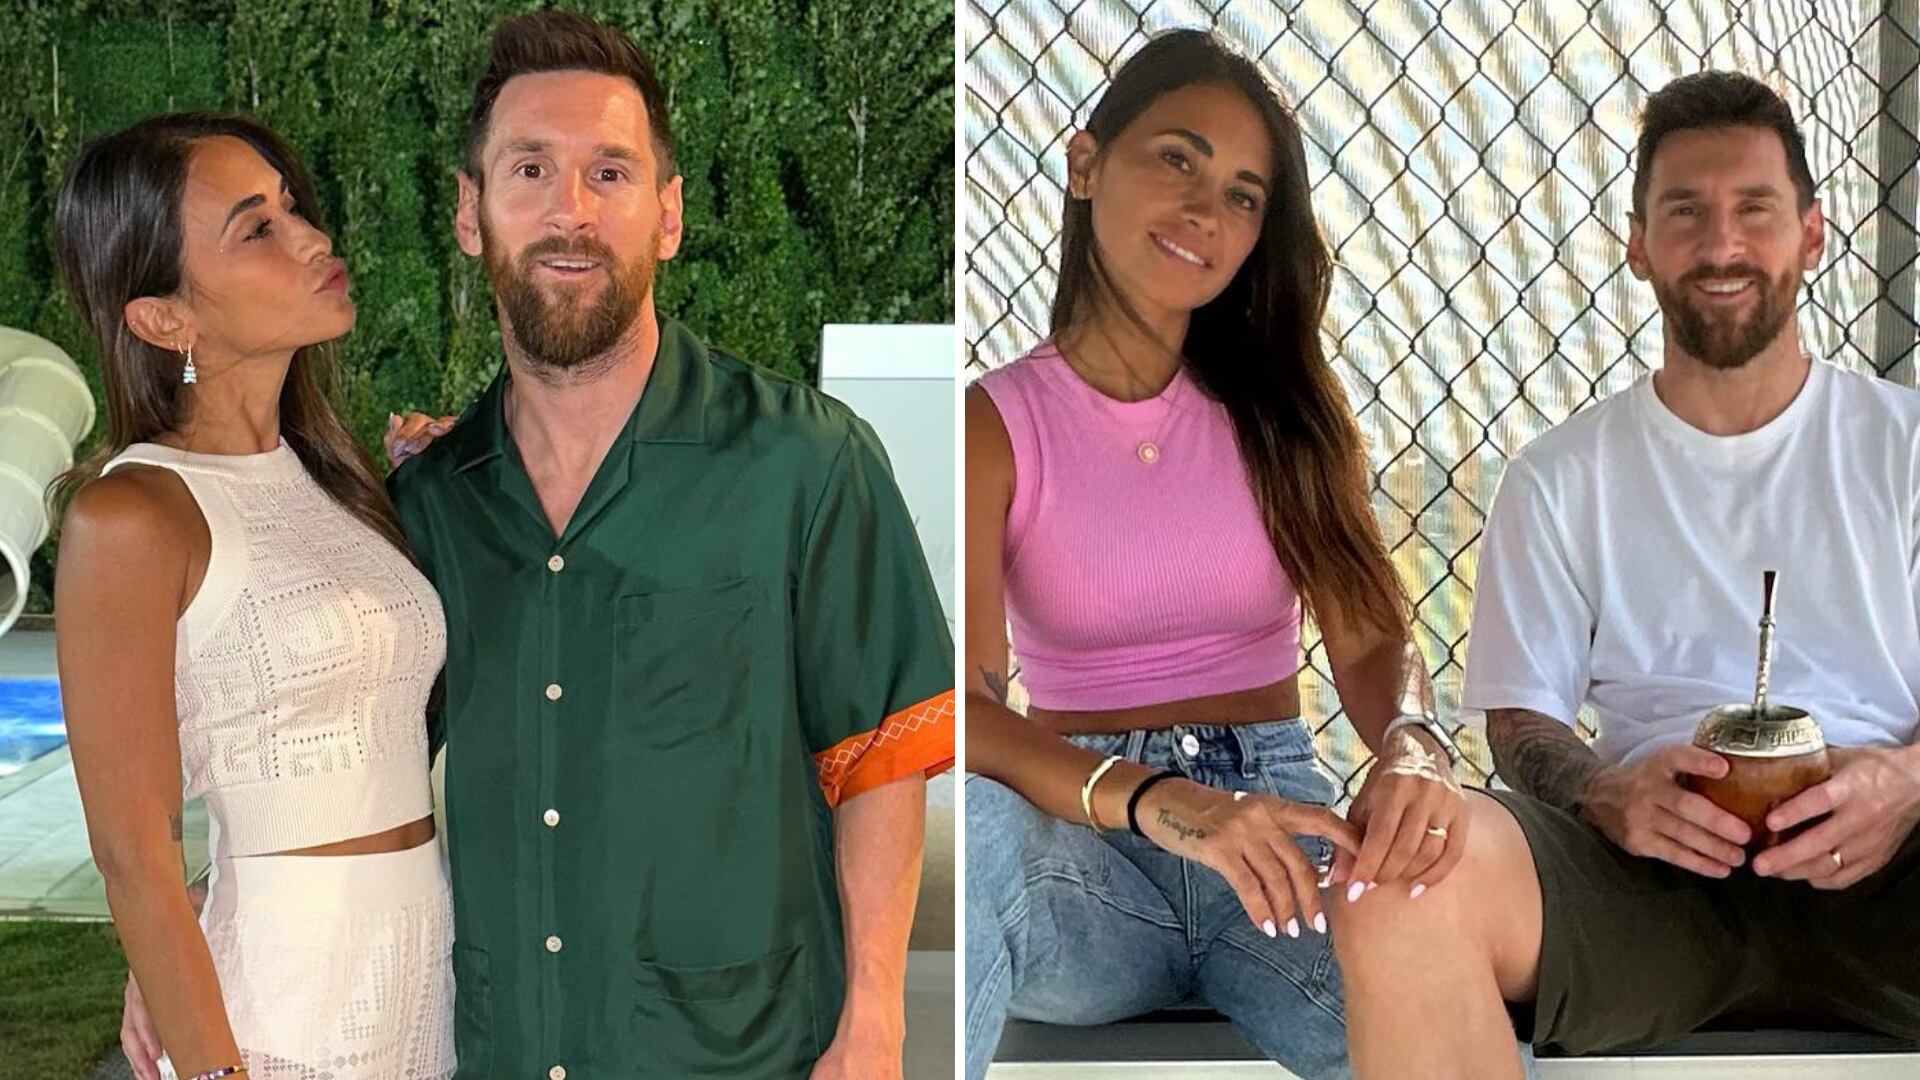 Un video de Lionel Messi se viralizó, pues al parecer, el astro del fútbol 'coqueteó' con una reportera de deportes.